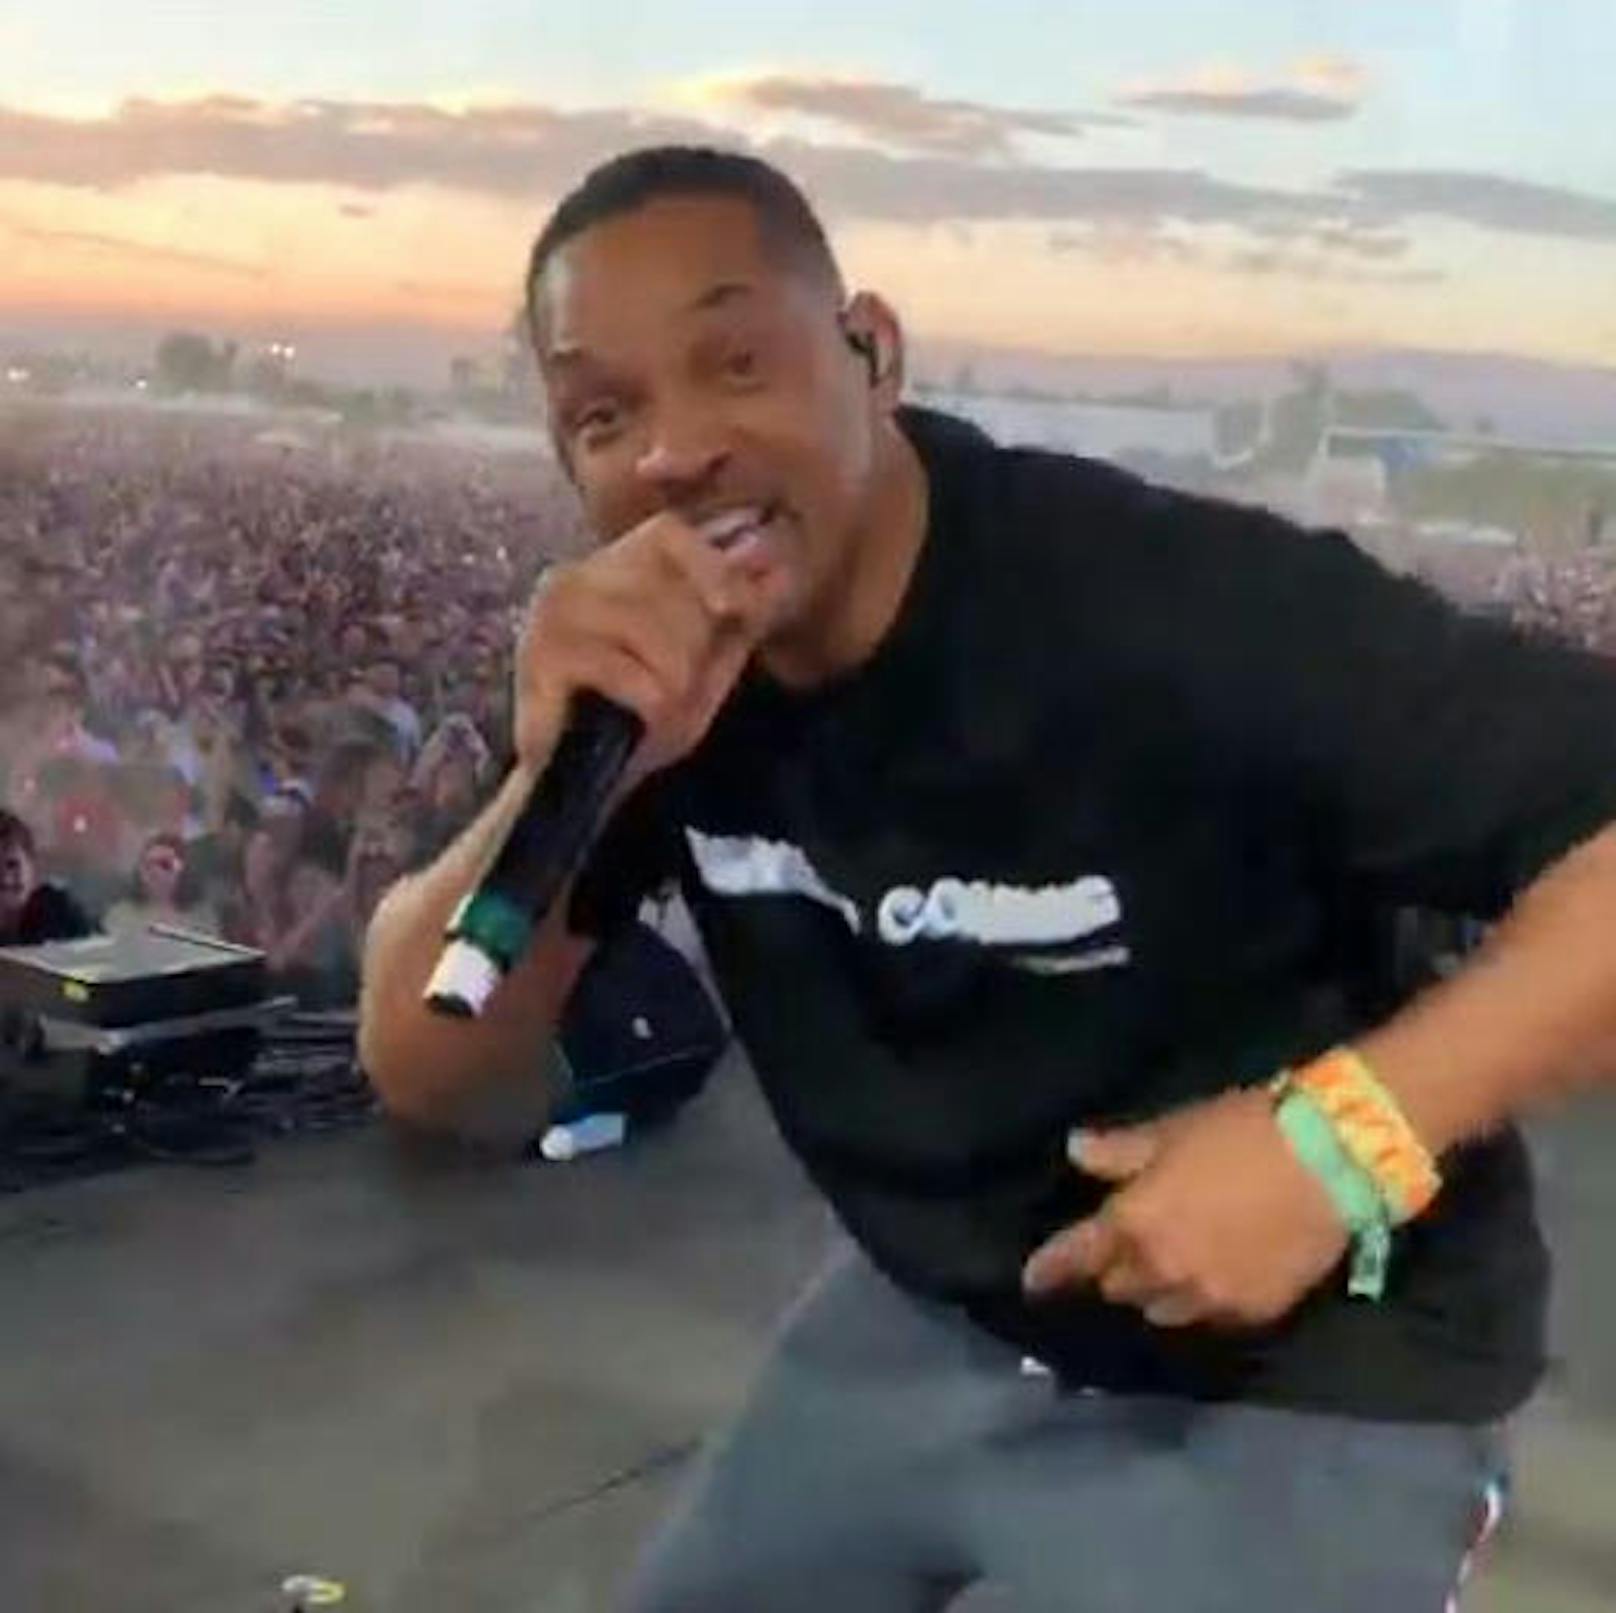 20.04.2019: Will Smith (50) trat überraschend beim Coachella-Festival auf. Er unterstützte seinen Sohn Jaden (20) auf der Bühne und demonstrierte, dass er seine Karriere als Rapper (Fresh Prince) begonnen hat.